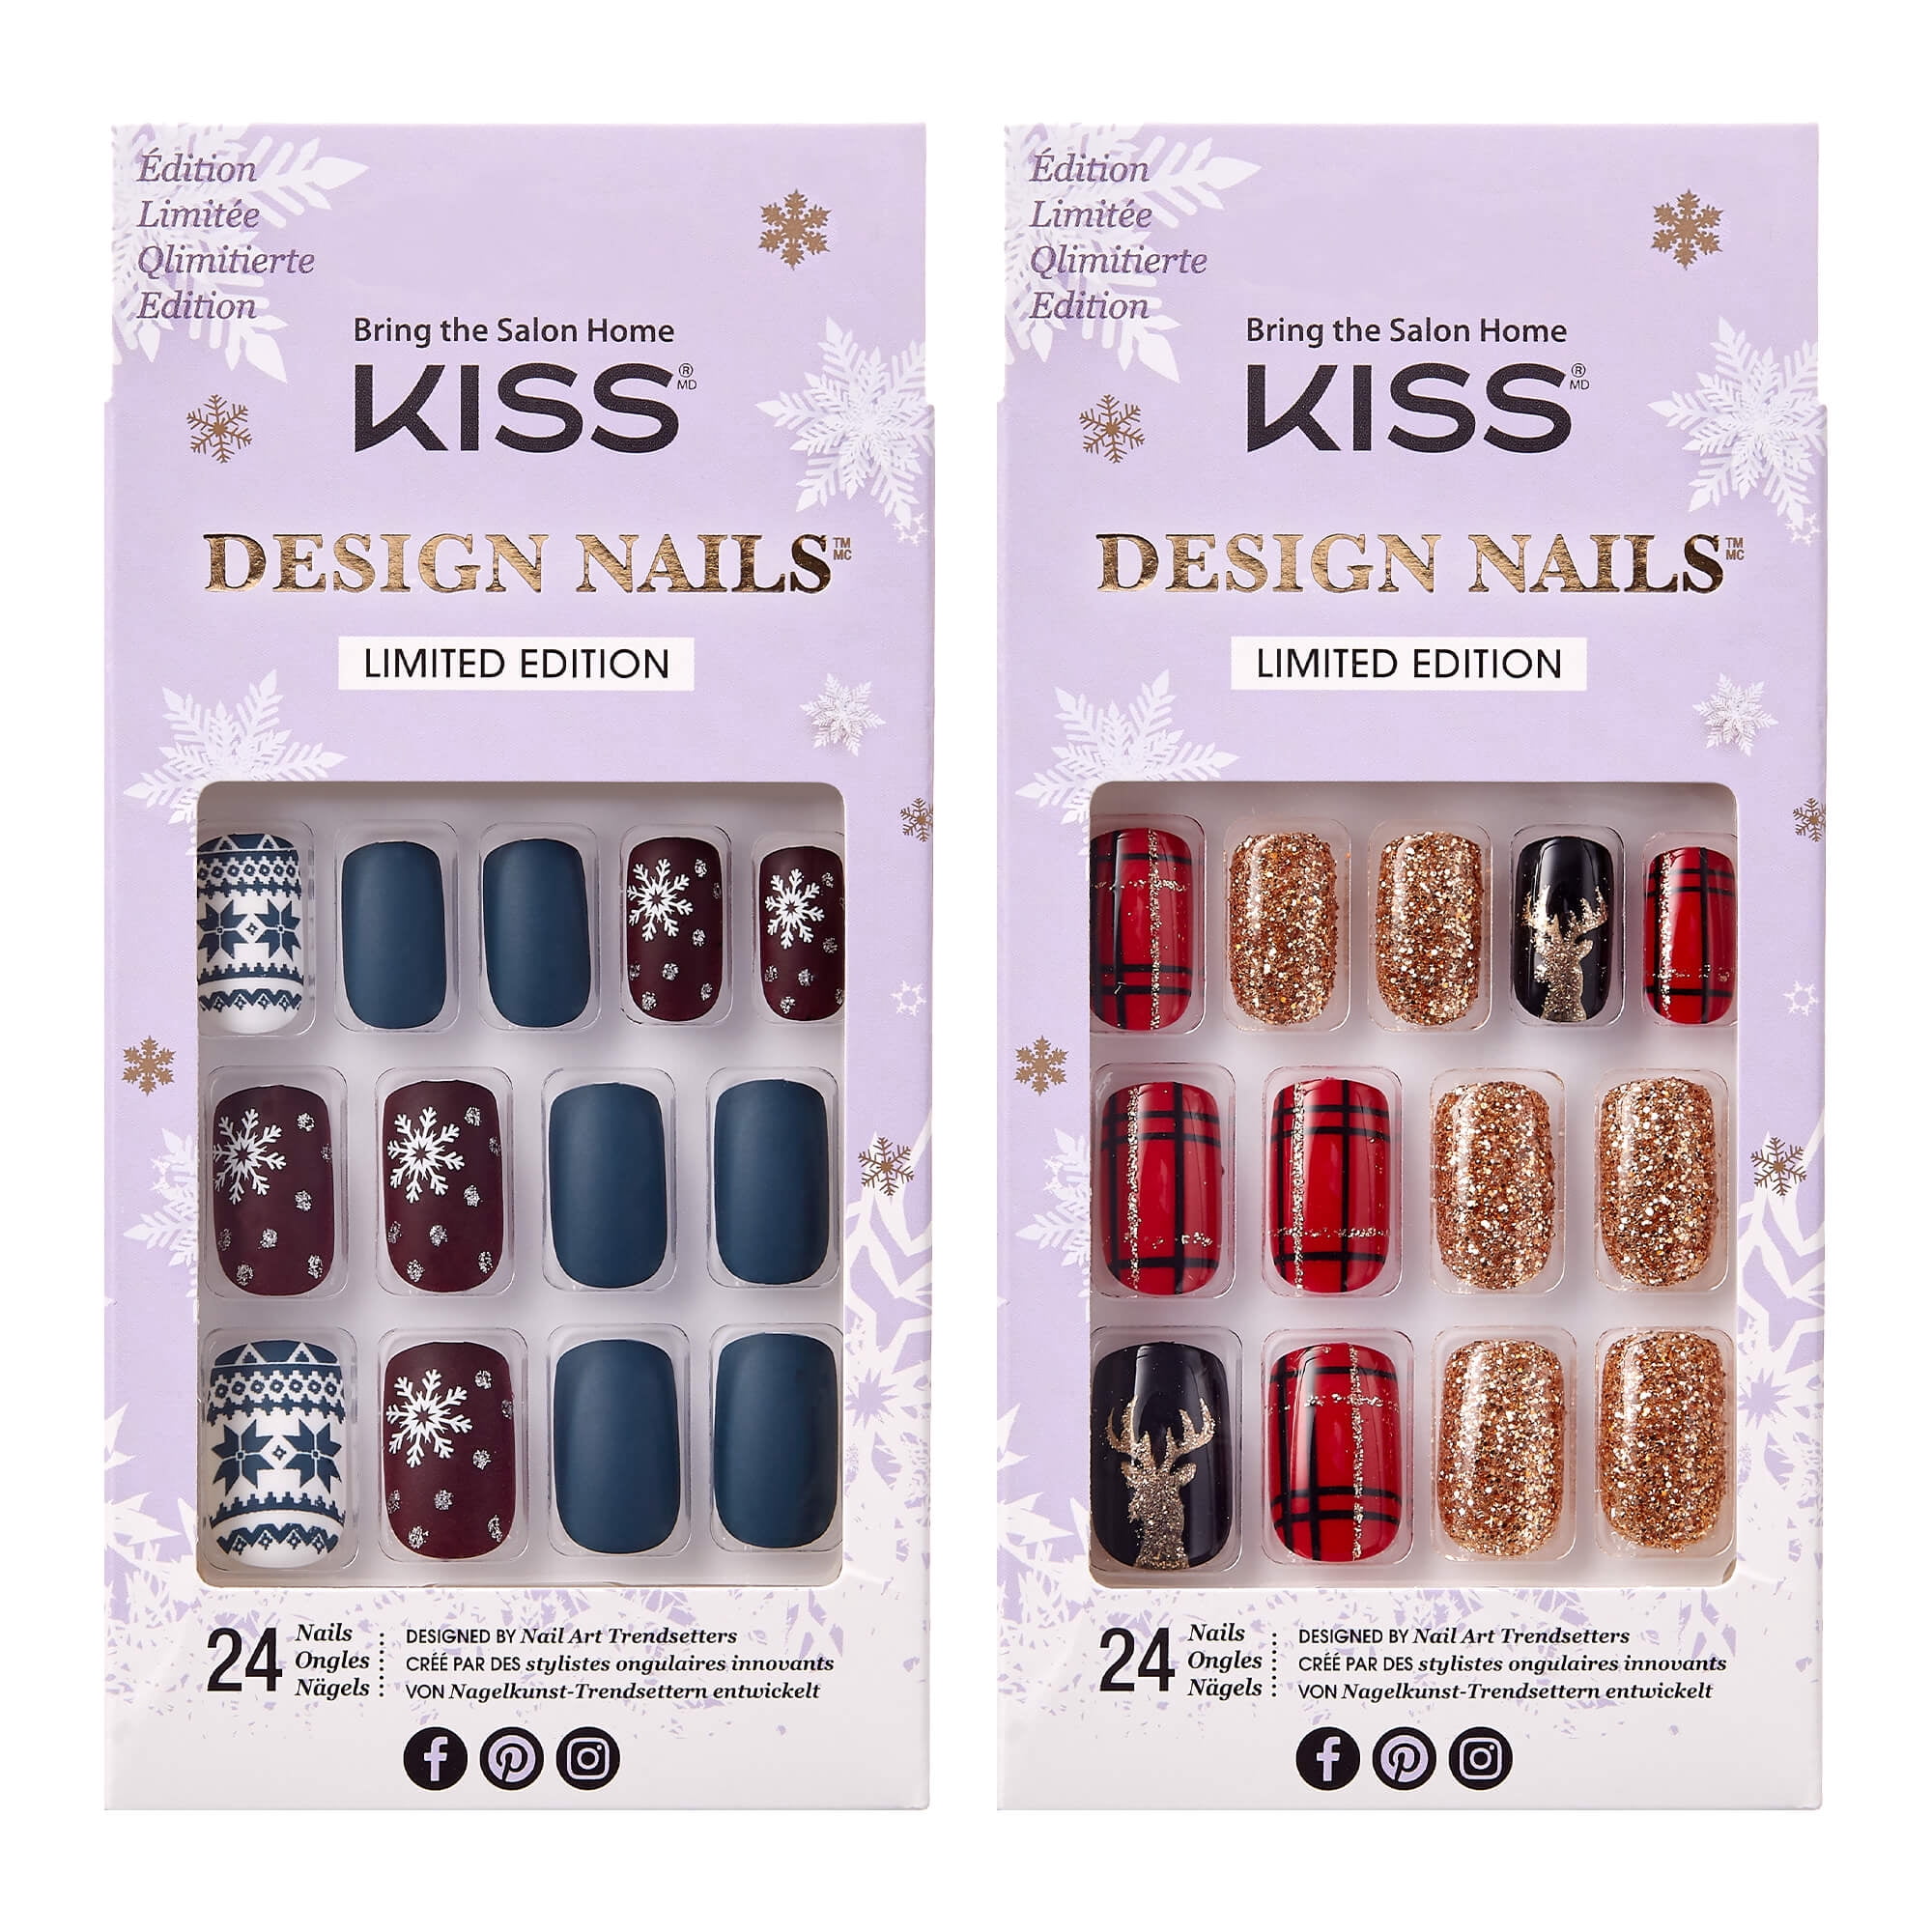 Kiss Holiday Design Nails False Nails - Squoval, Medium - Walmart.com